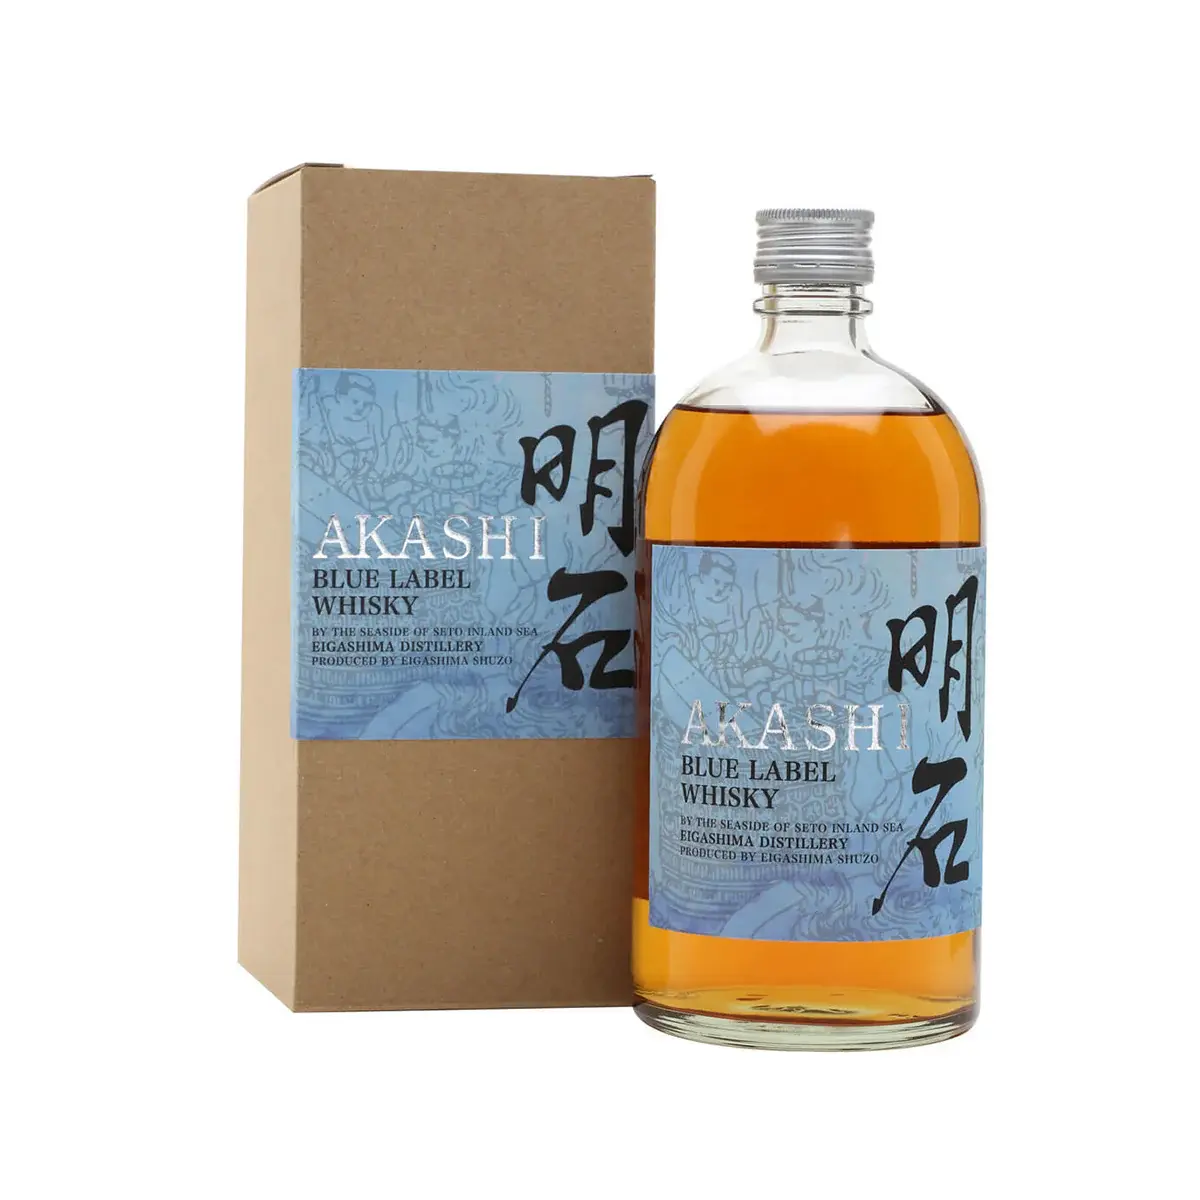 Selected image for Akashi Blue Label Viski, 700 ml